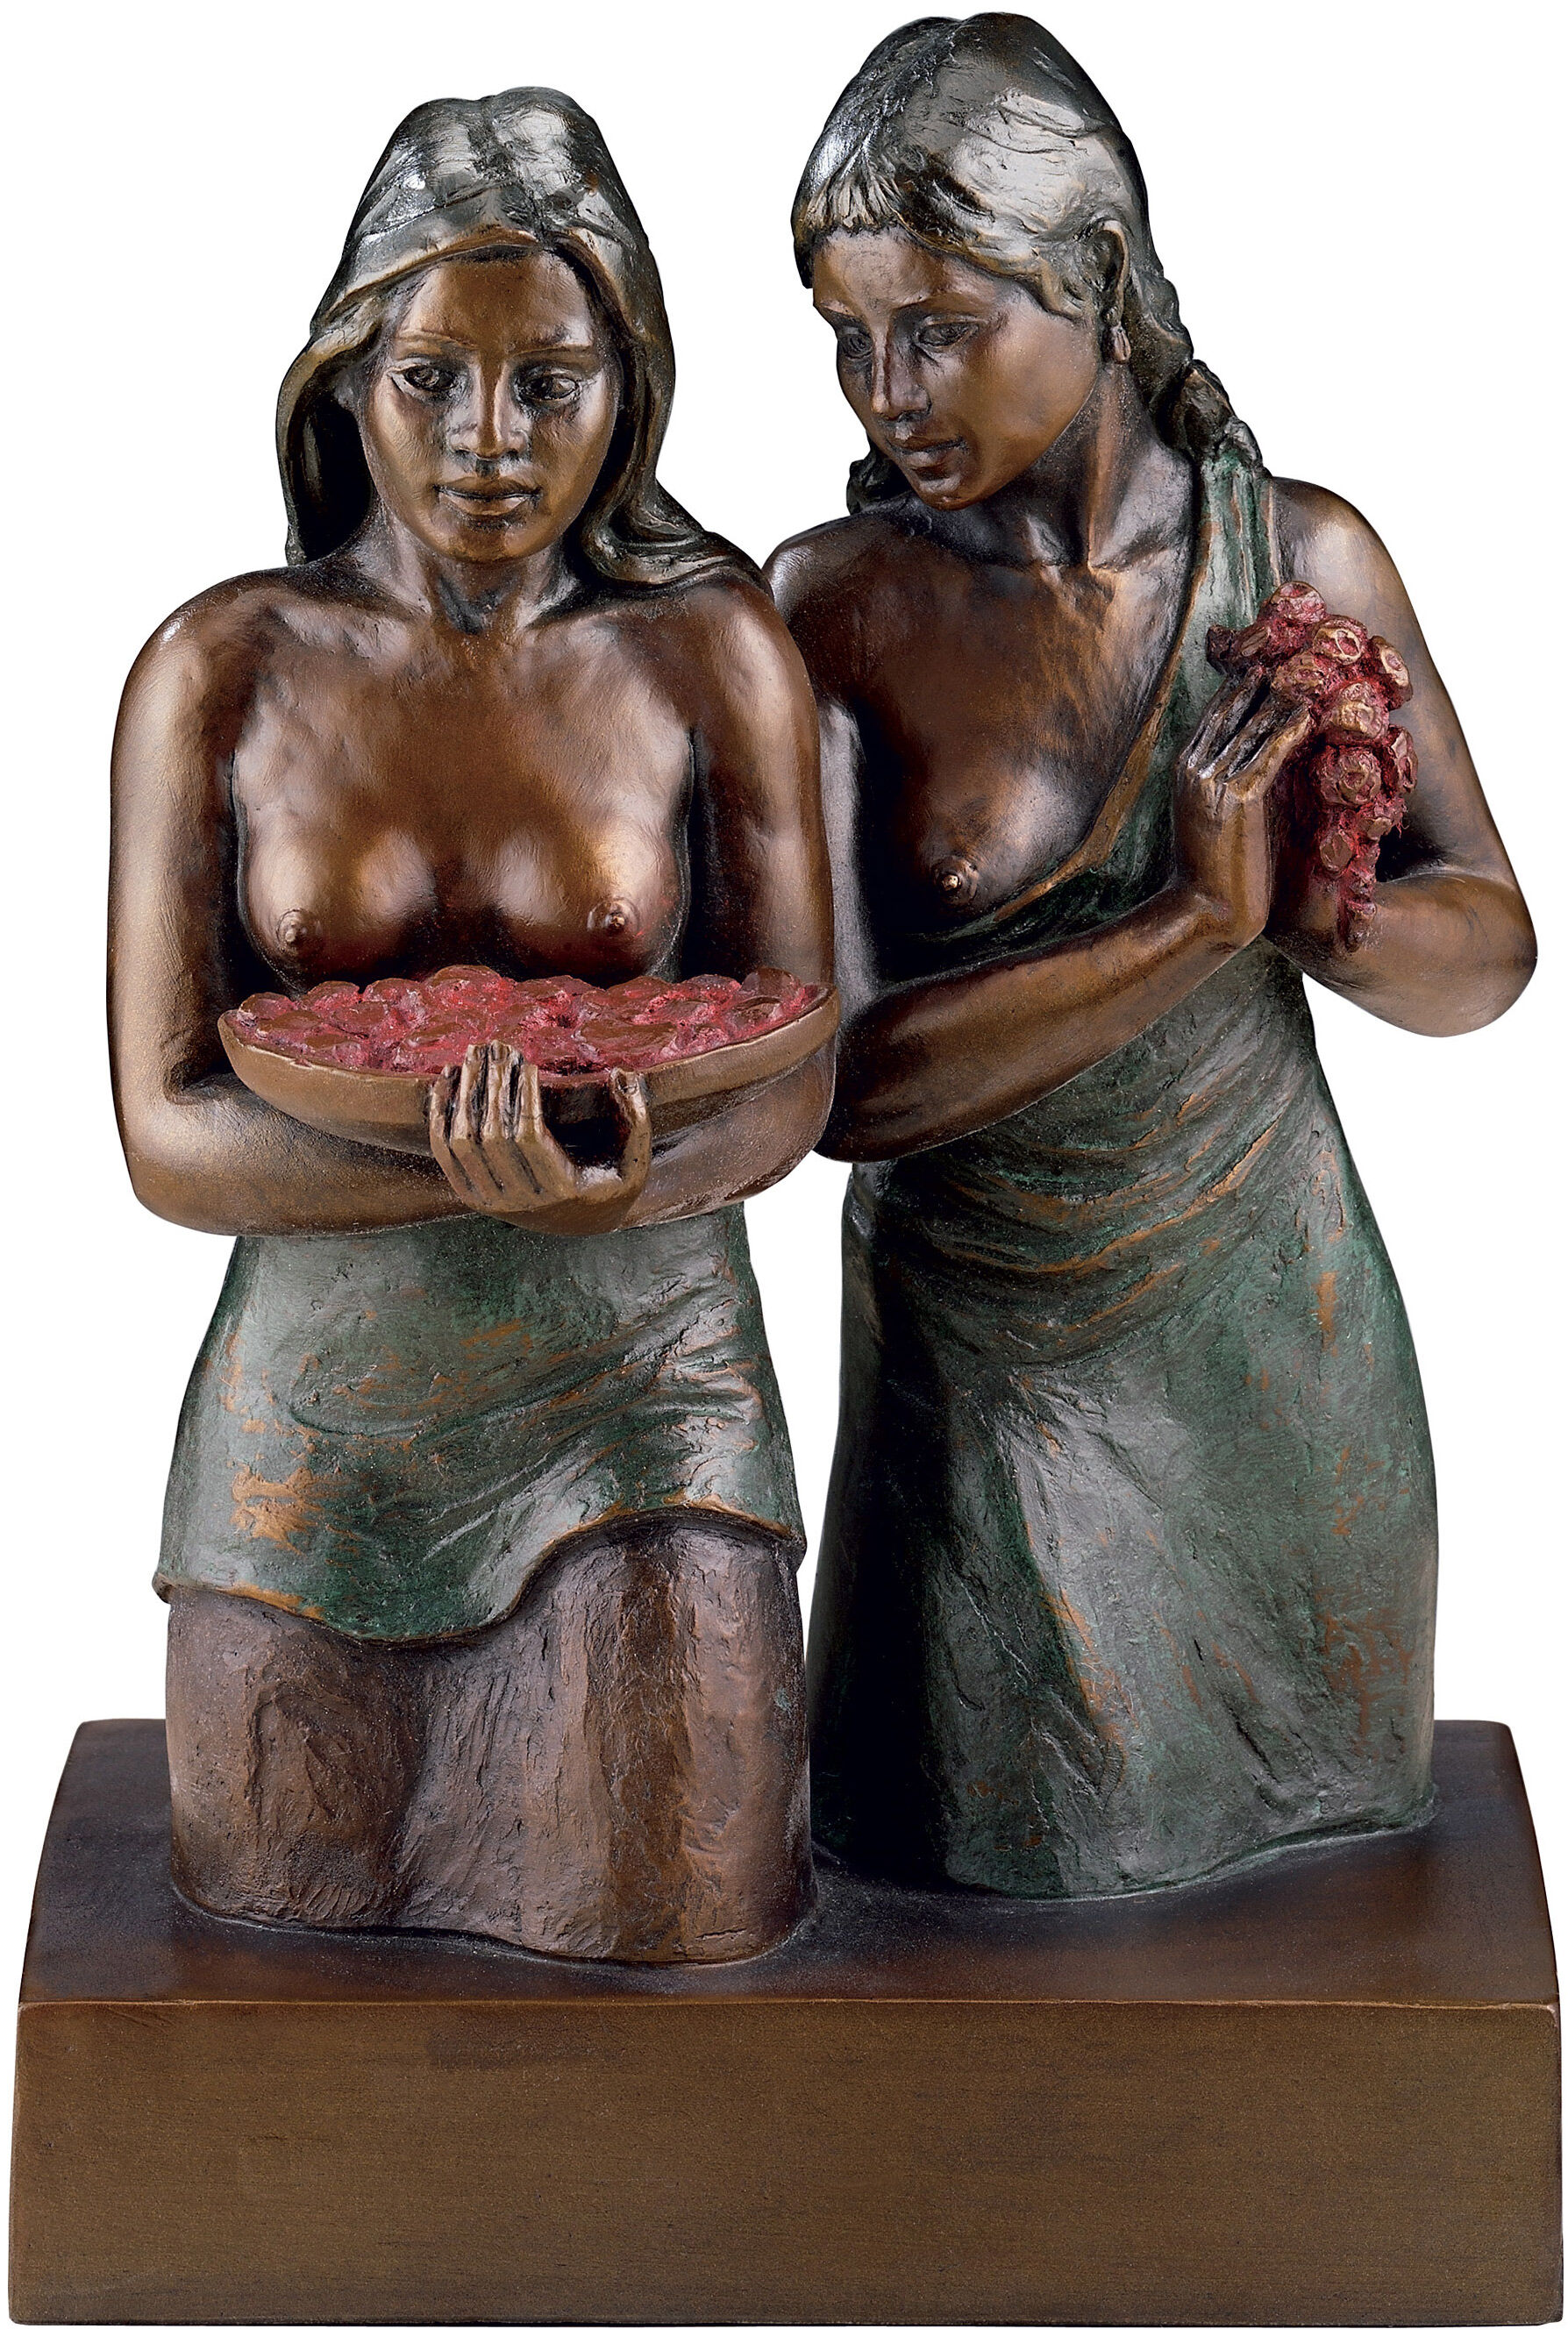 Skulptur "Deux Tahitiennes", förgylld brons von Paul Gauguin